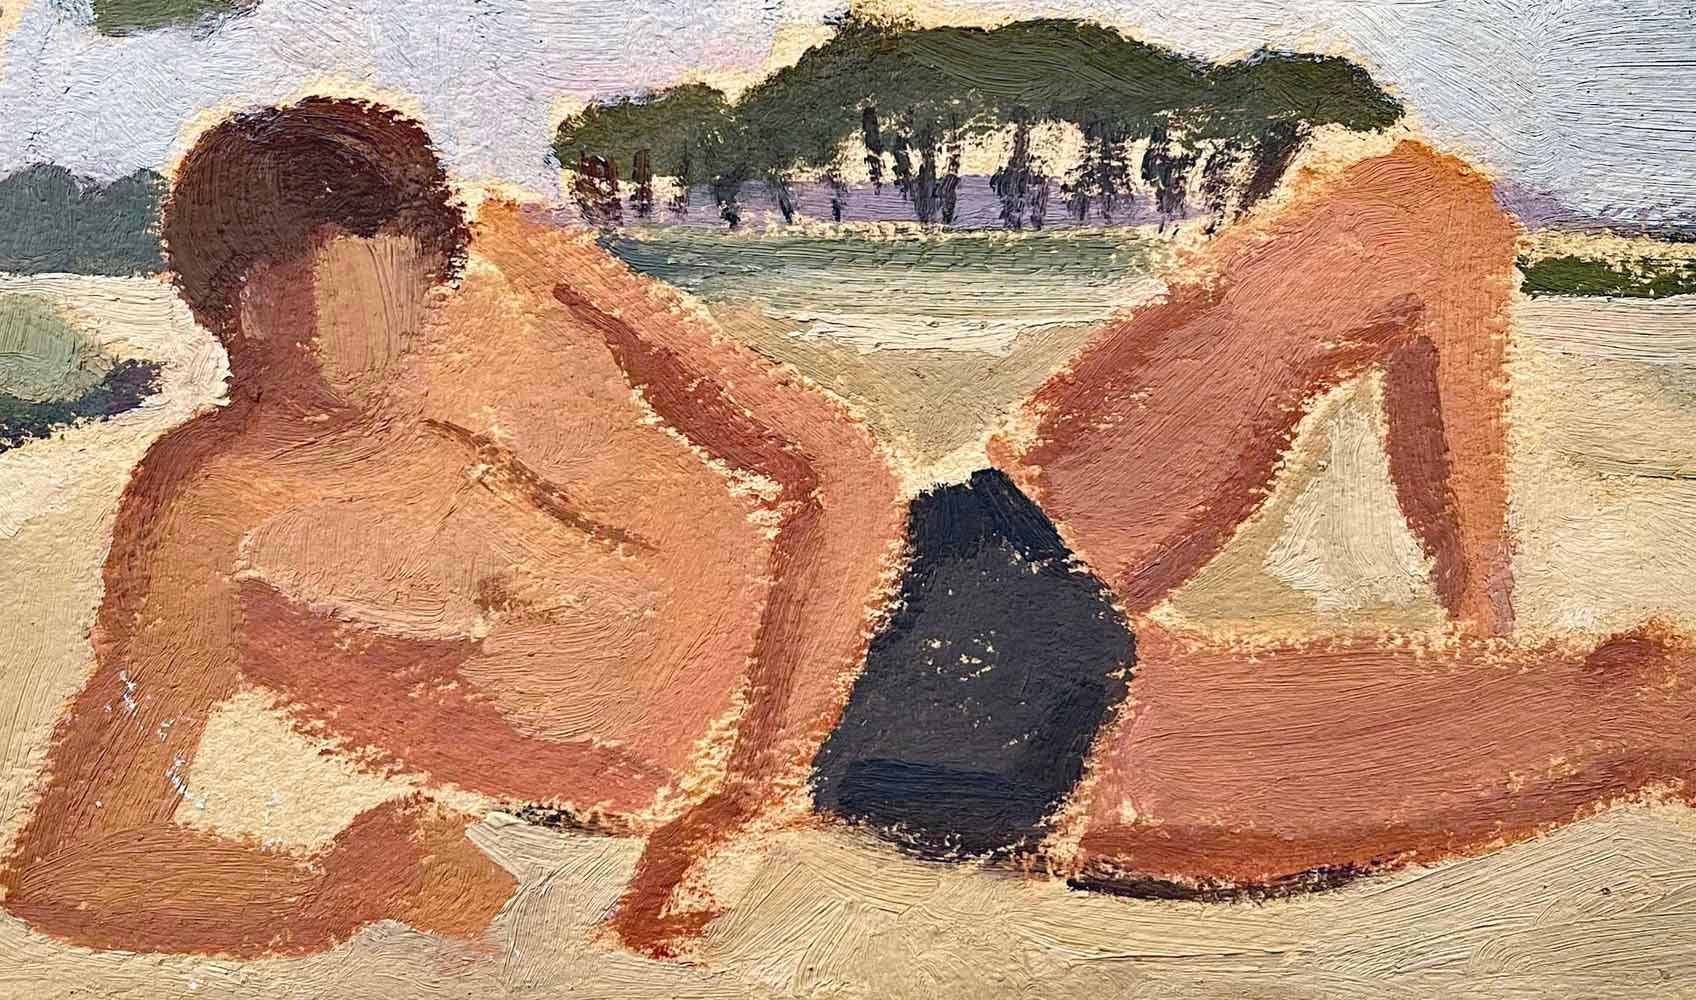 Charmante et pleine de lumière, cette gouache représentant un jeune homme en maillot de bain noir se prélassant sur une grande plage a été peinte par Louise Alix dans les années 1950.  Le teint rosé de l'homme, la voûte des arbres au loin et le ciel